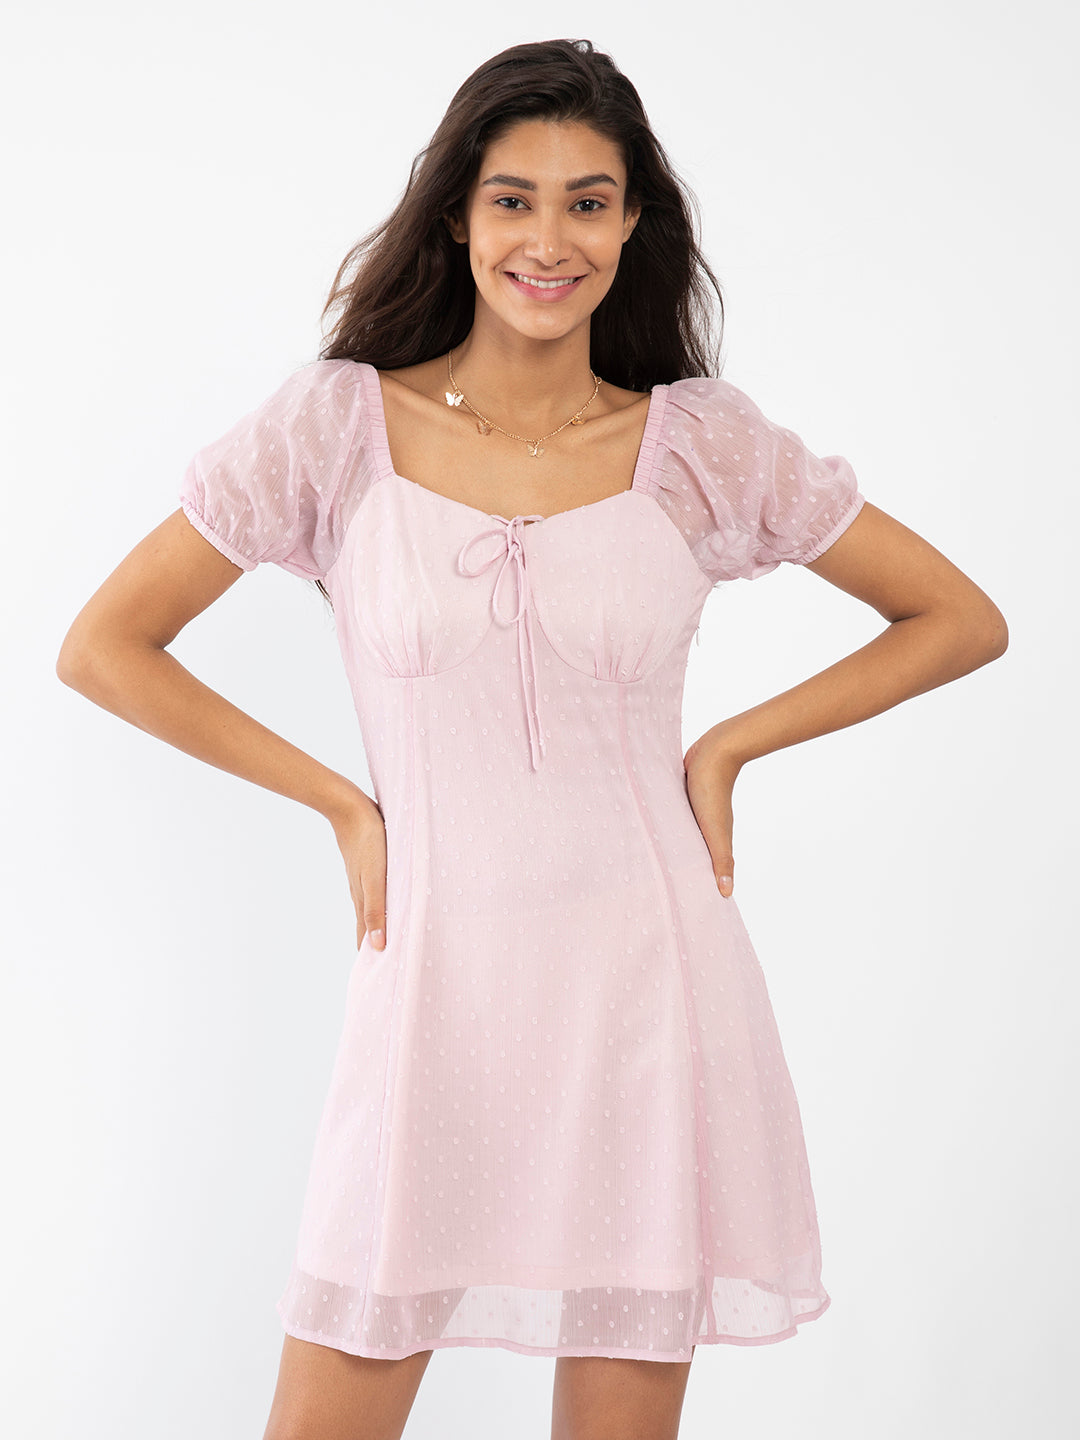 Pink Textured Short Dress For Women